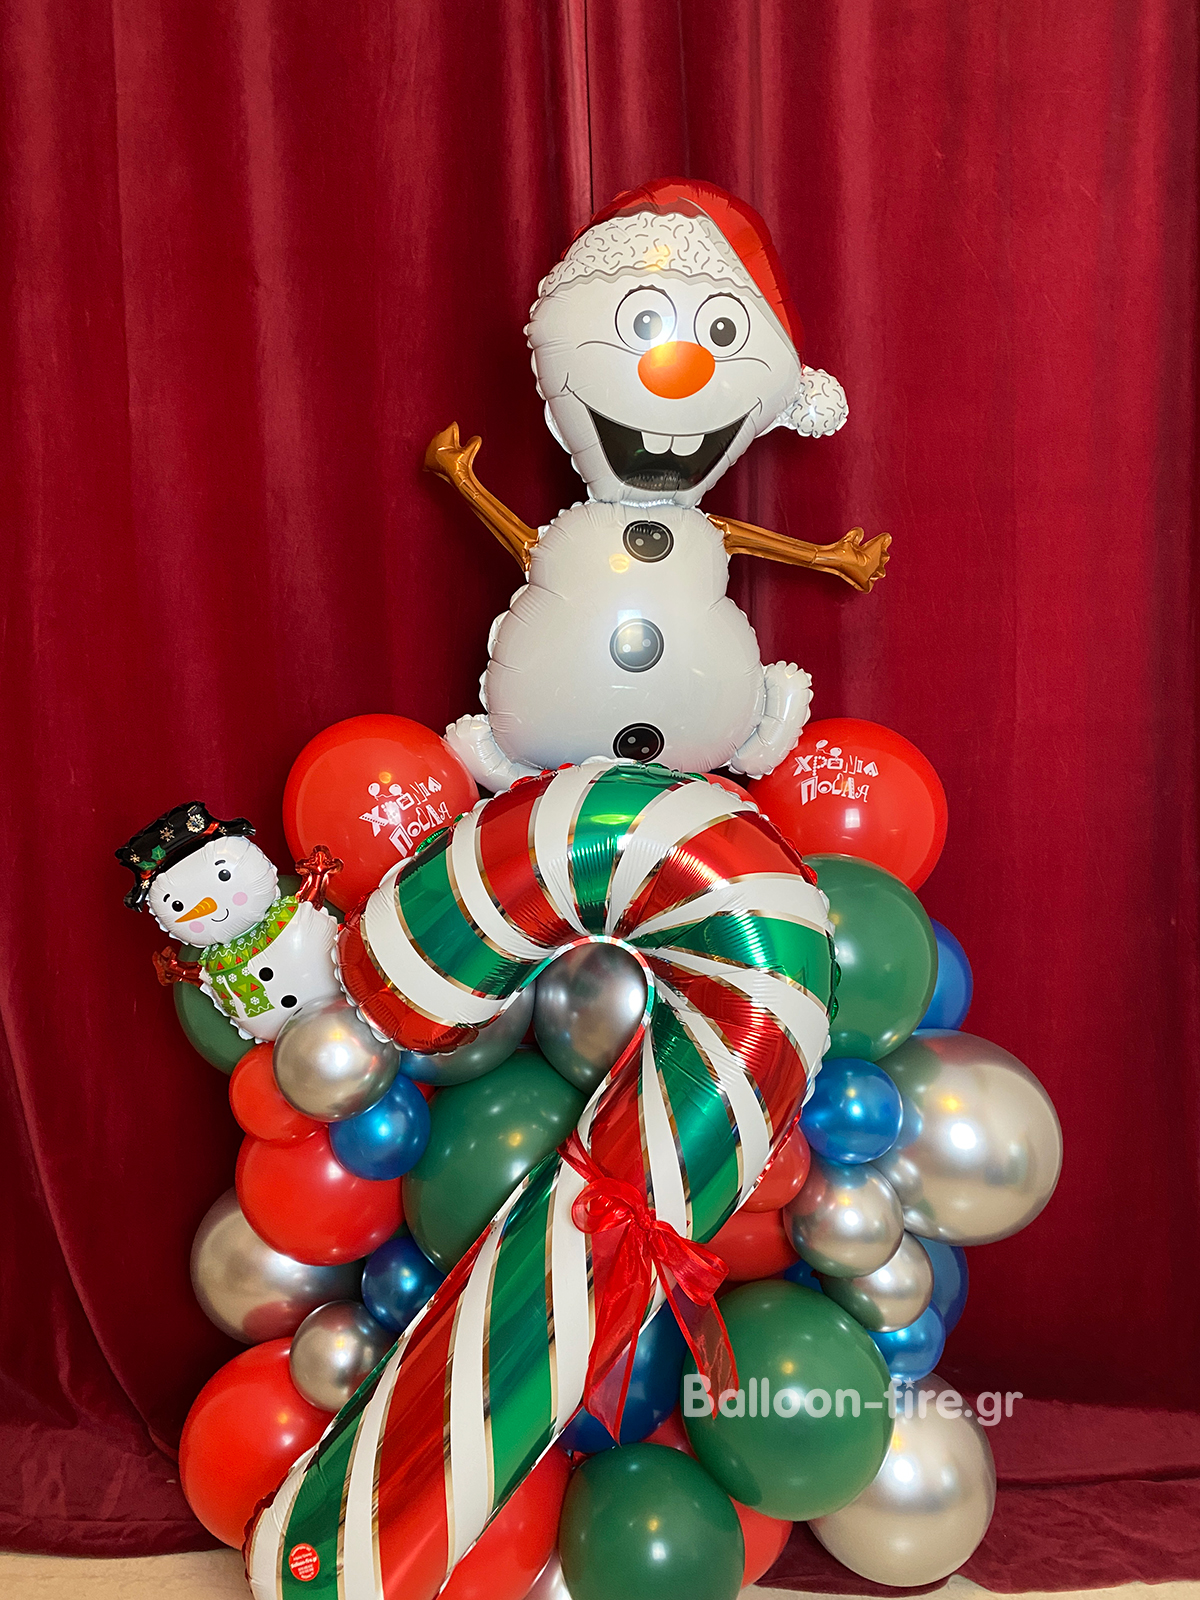 Κατασκευή χιονάνθρωπος Olaf με candy foil